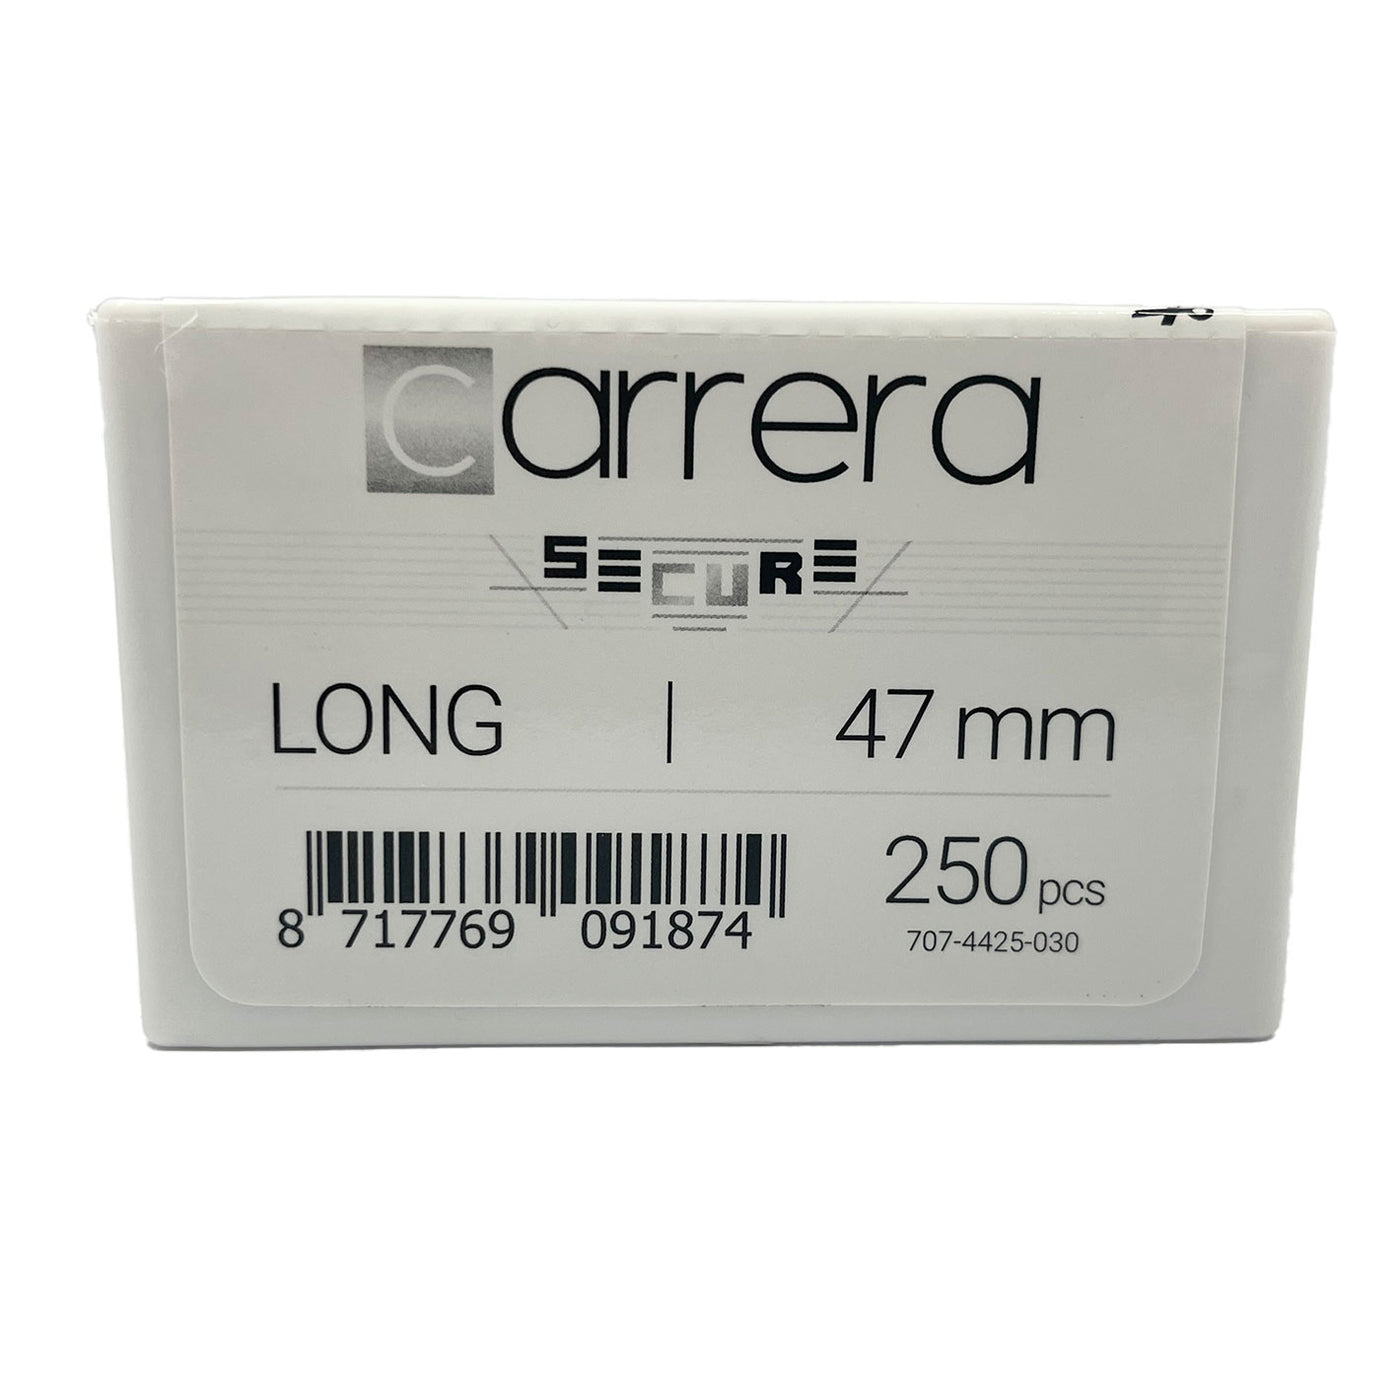 Liberty Carrera Secure Long 250pcs